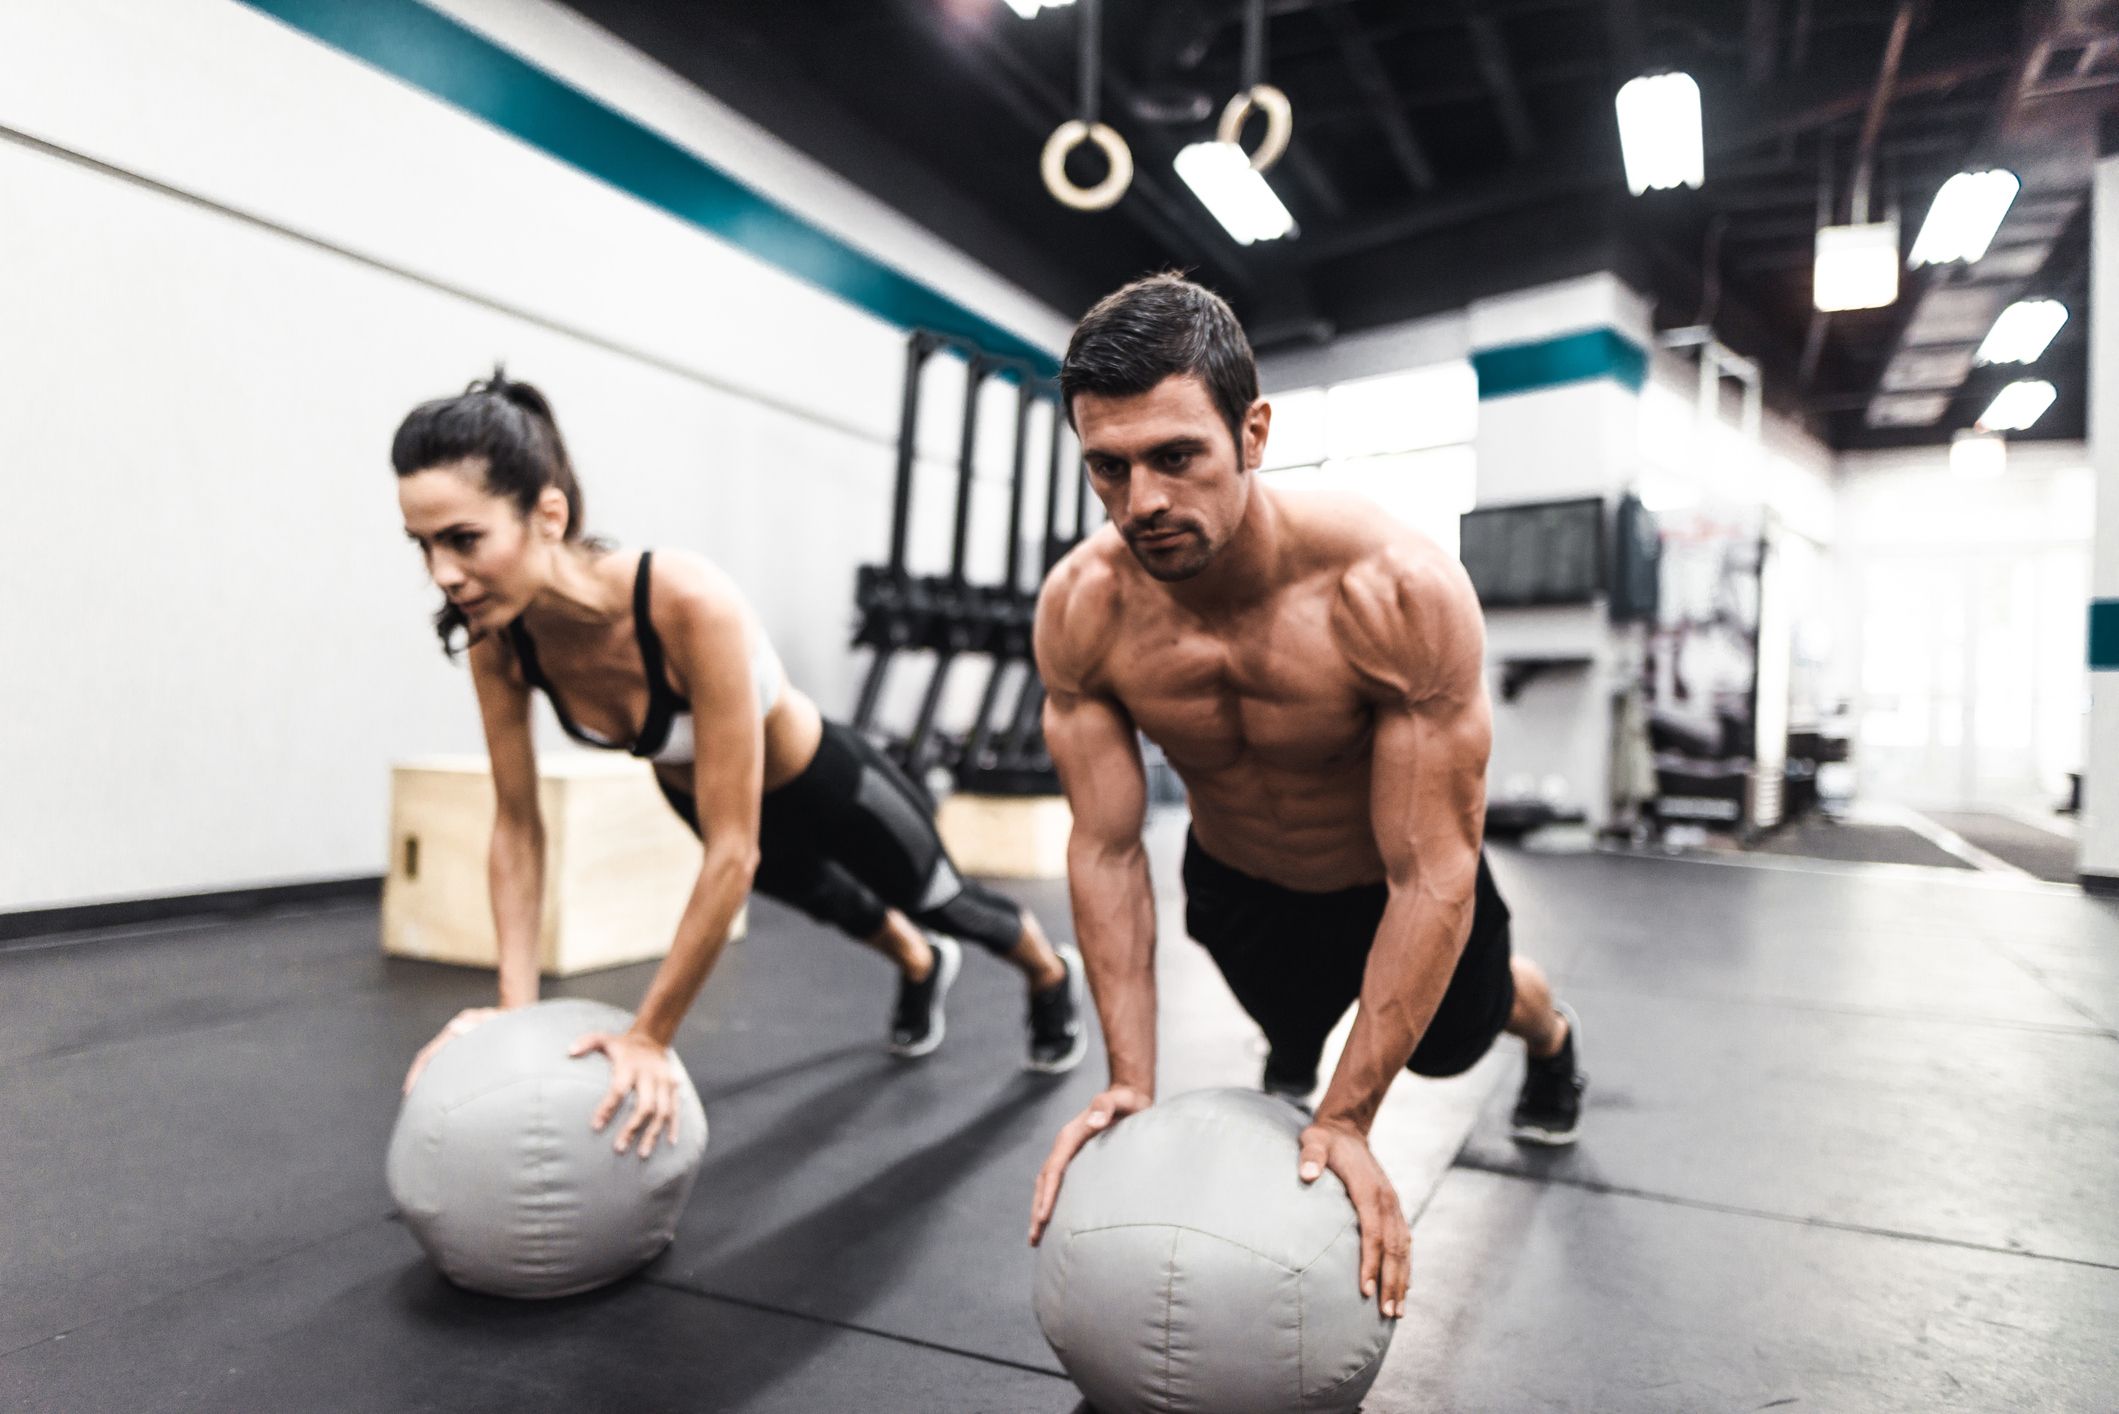 Entrenando en el gimnasio. Hombre con grandes músculos levantando peso  mientras entrena en el gimnasio. Ponerse en forma. Stock Photo